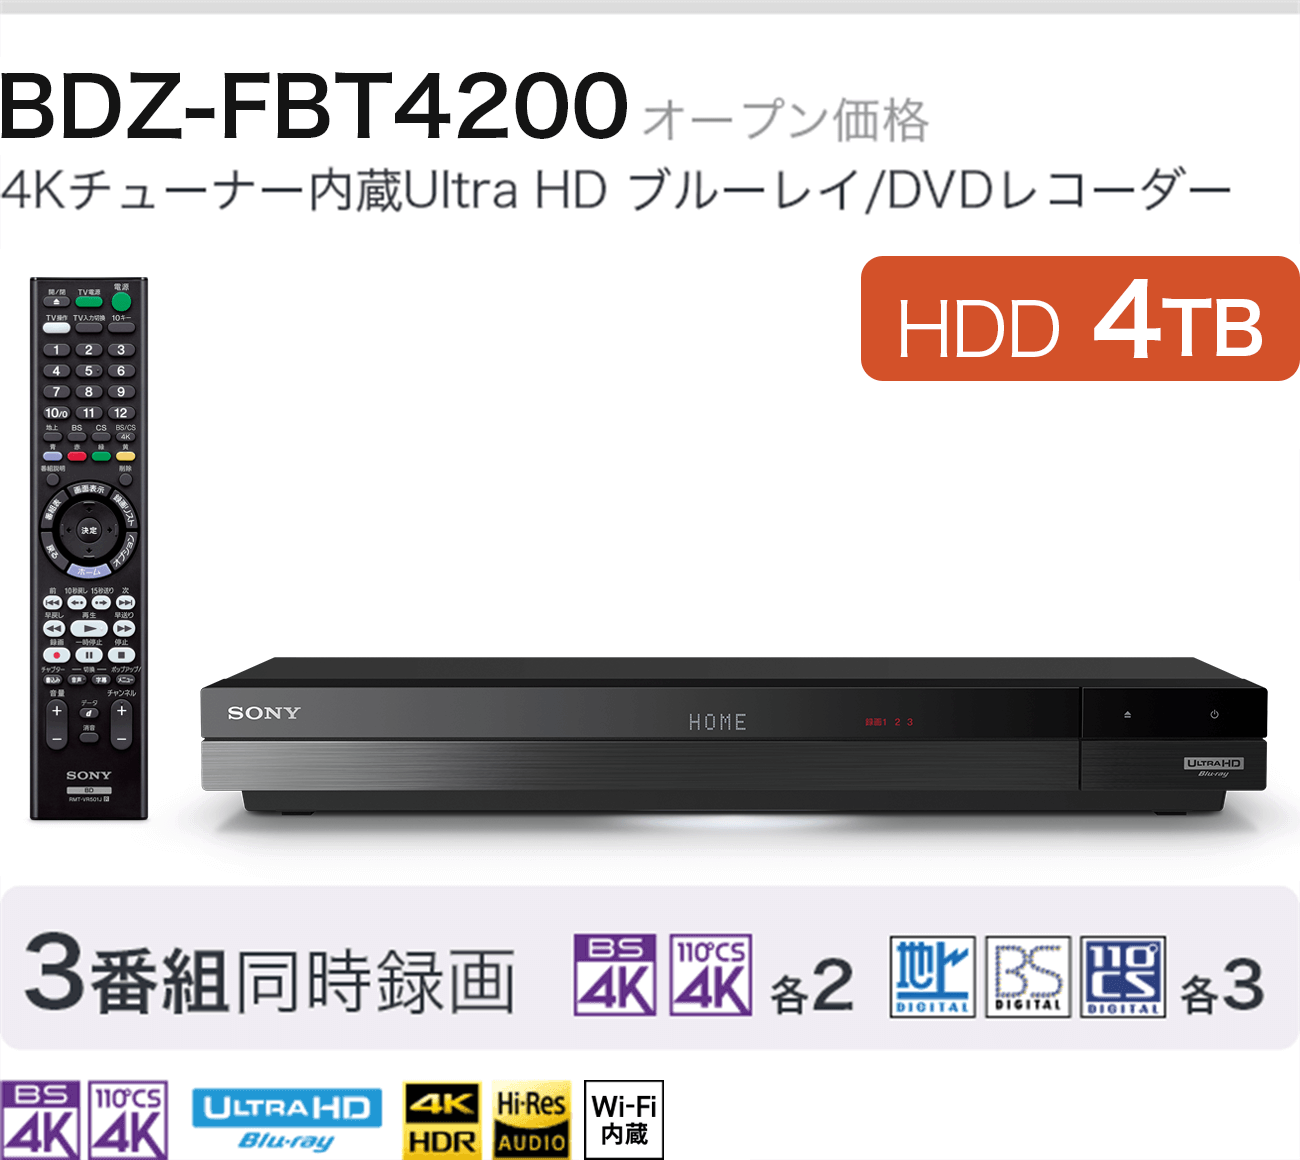 BDZ-FBT4200 I[vi 4K`[i[Ultra HD u[C/DVDR[_[ HDD 4TB 3ԑg^